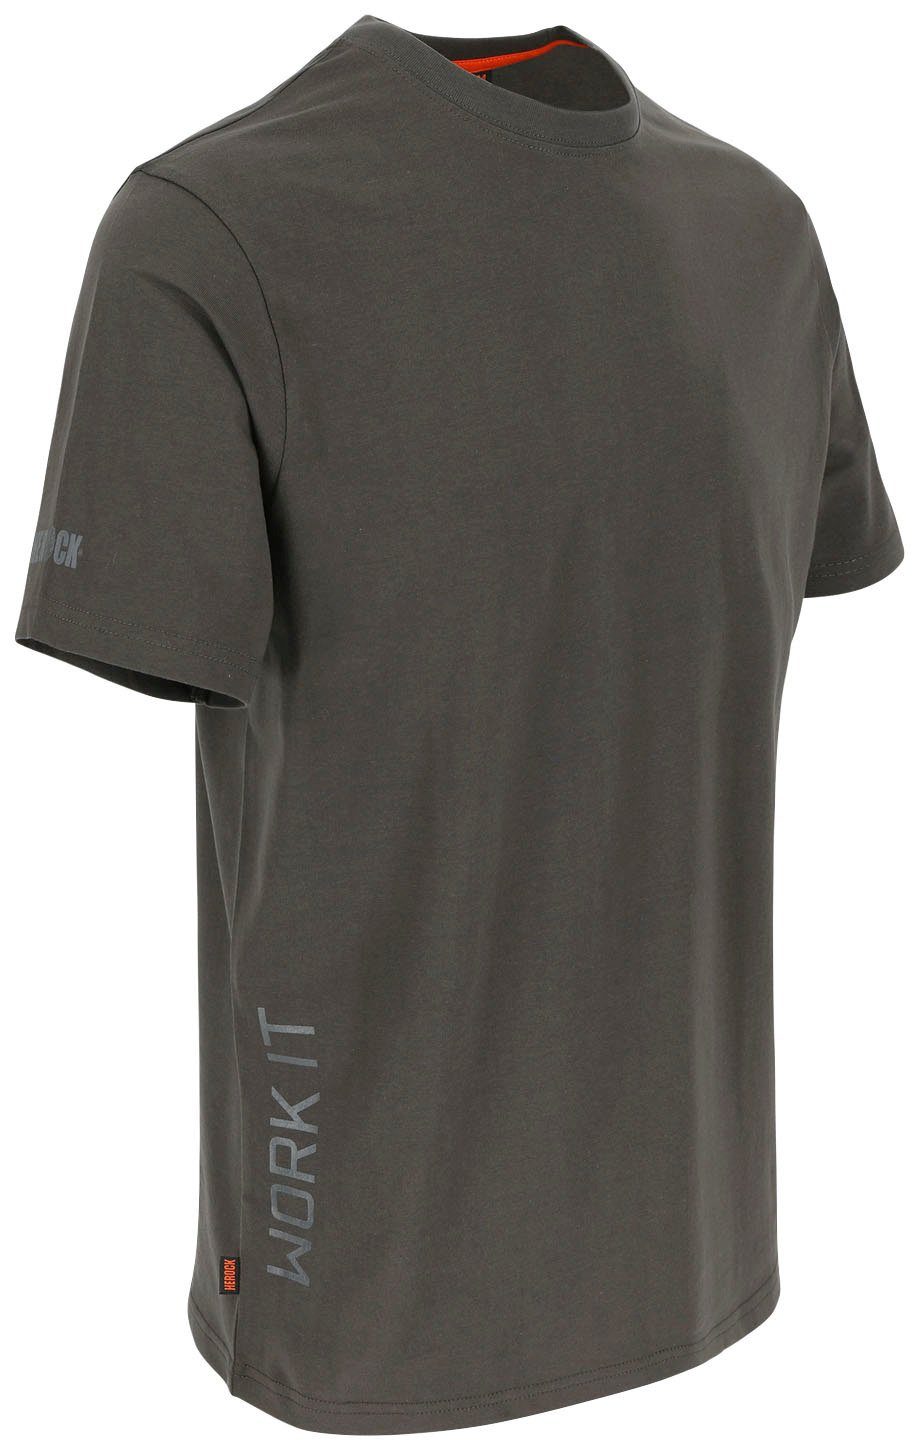 Ärmel T-Shirt Rippstrickkragen grau kurze T-Shirt Herock®-Aufdruck, kurze Rundhalsausschnitt, Callius Herock Ärmel,